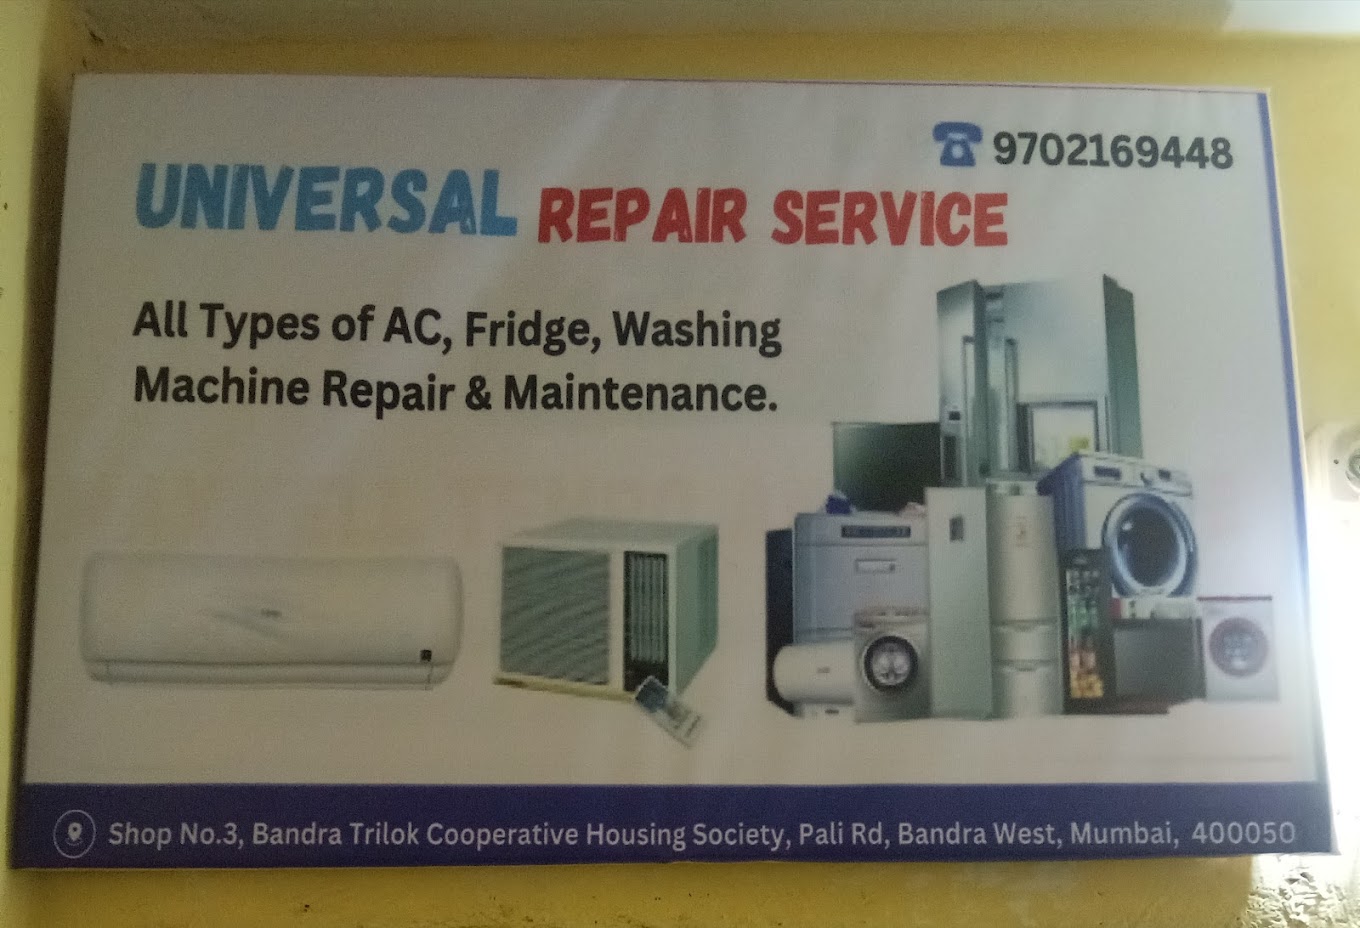 Universal Repair Service